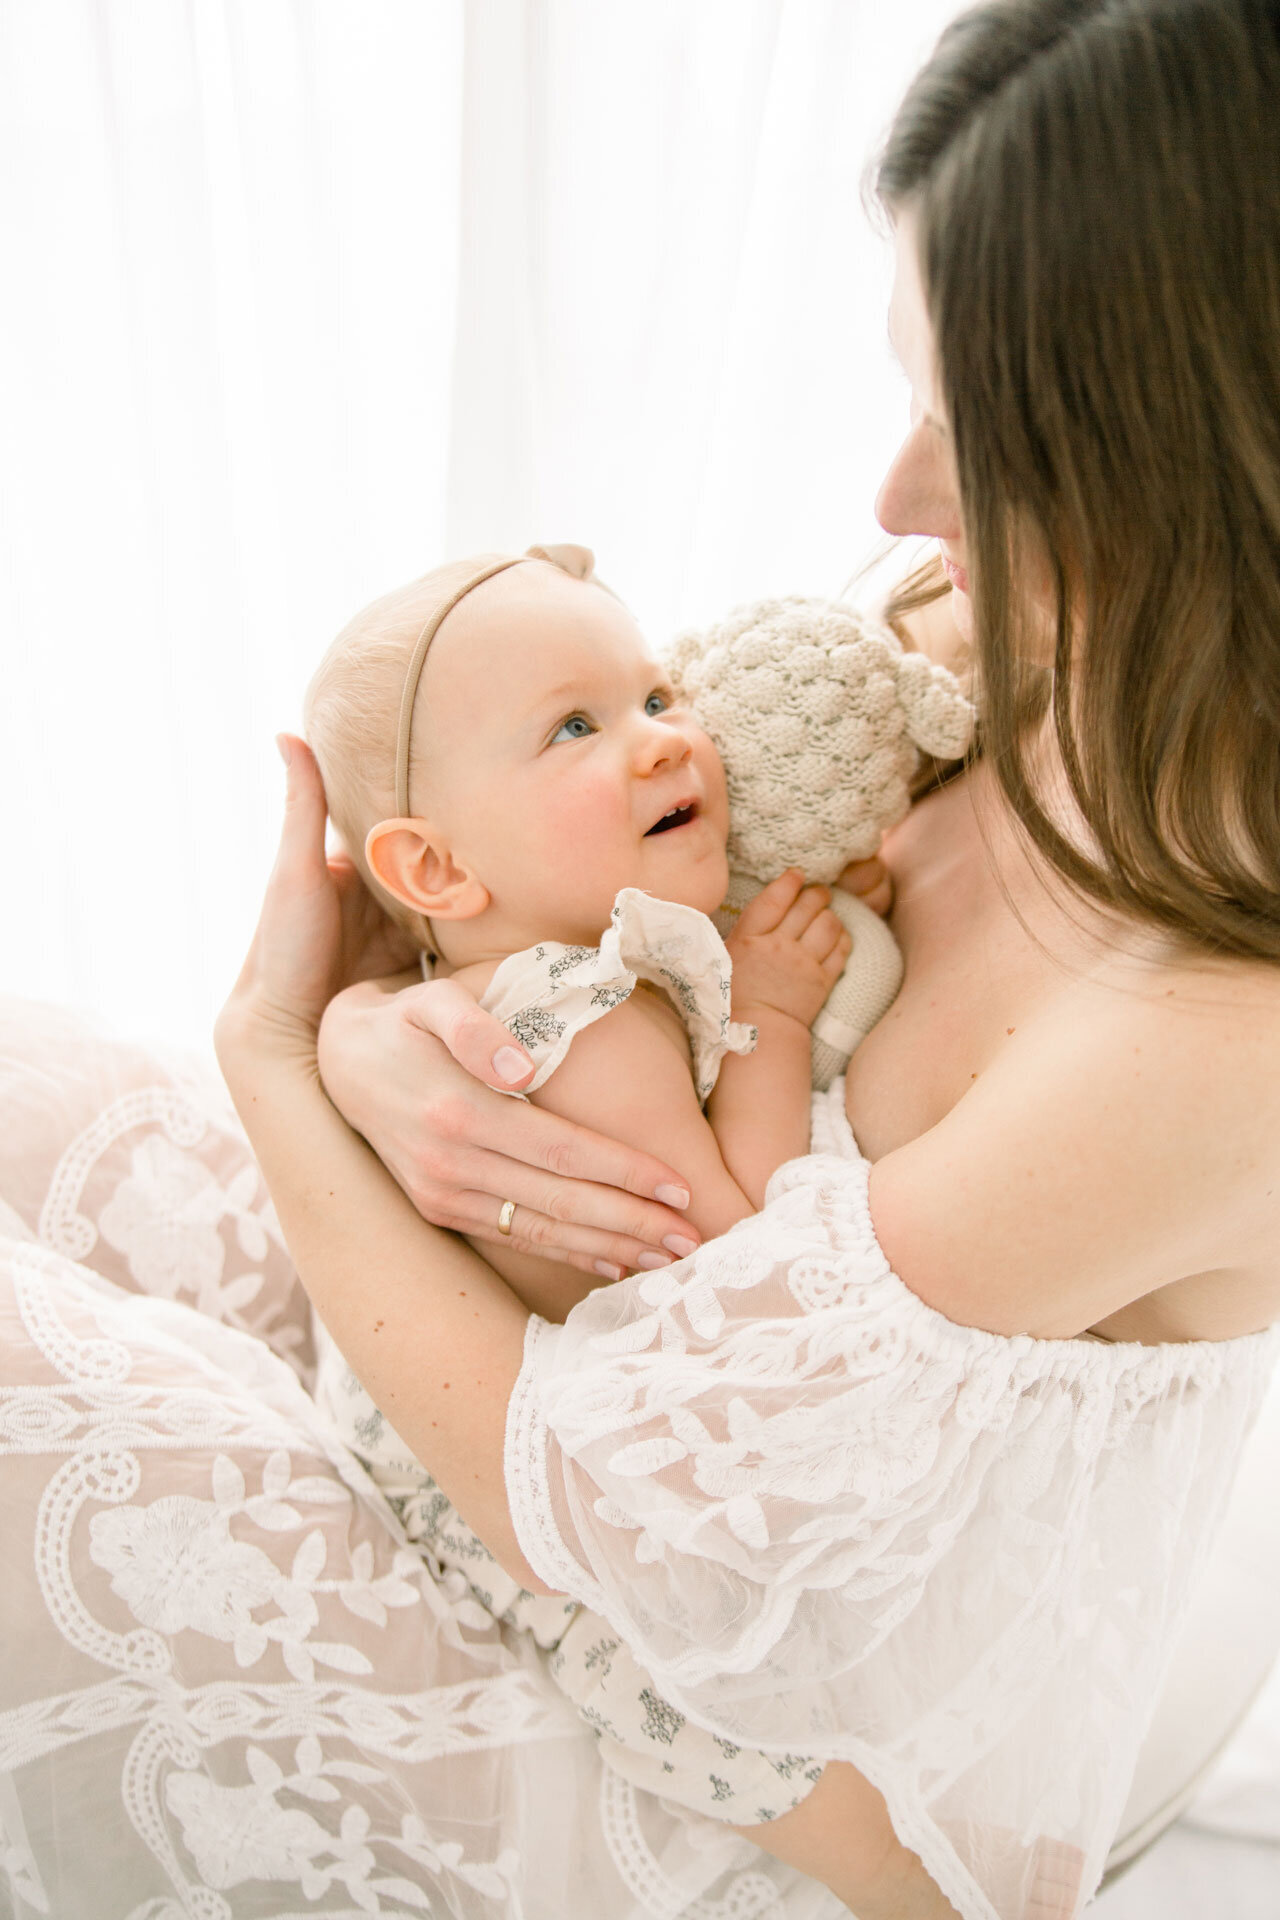 Babyfotografie Verl. mama im weißen Kleid hält Baby im Arm, das sie verliebt ansieht.